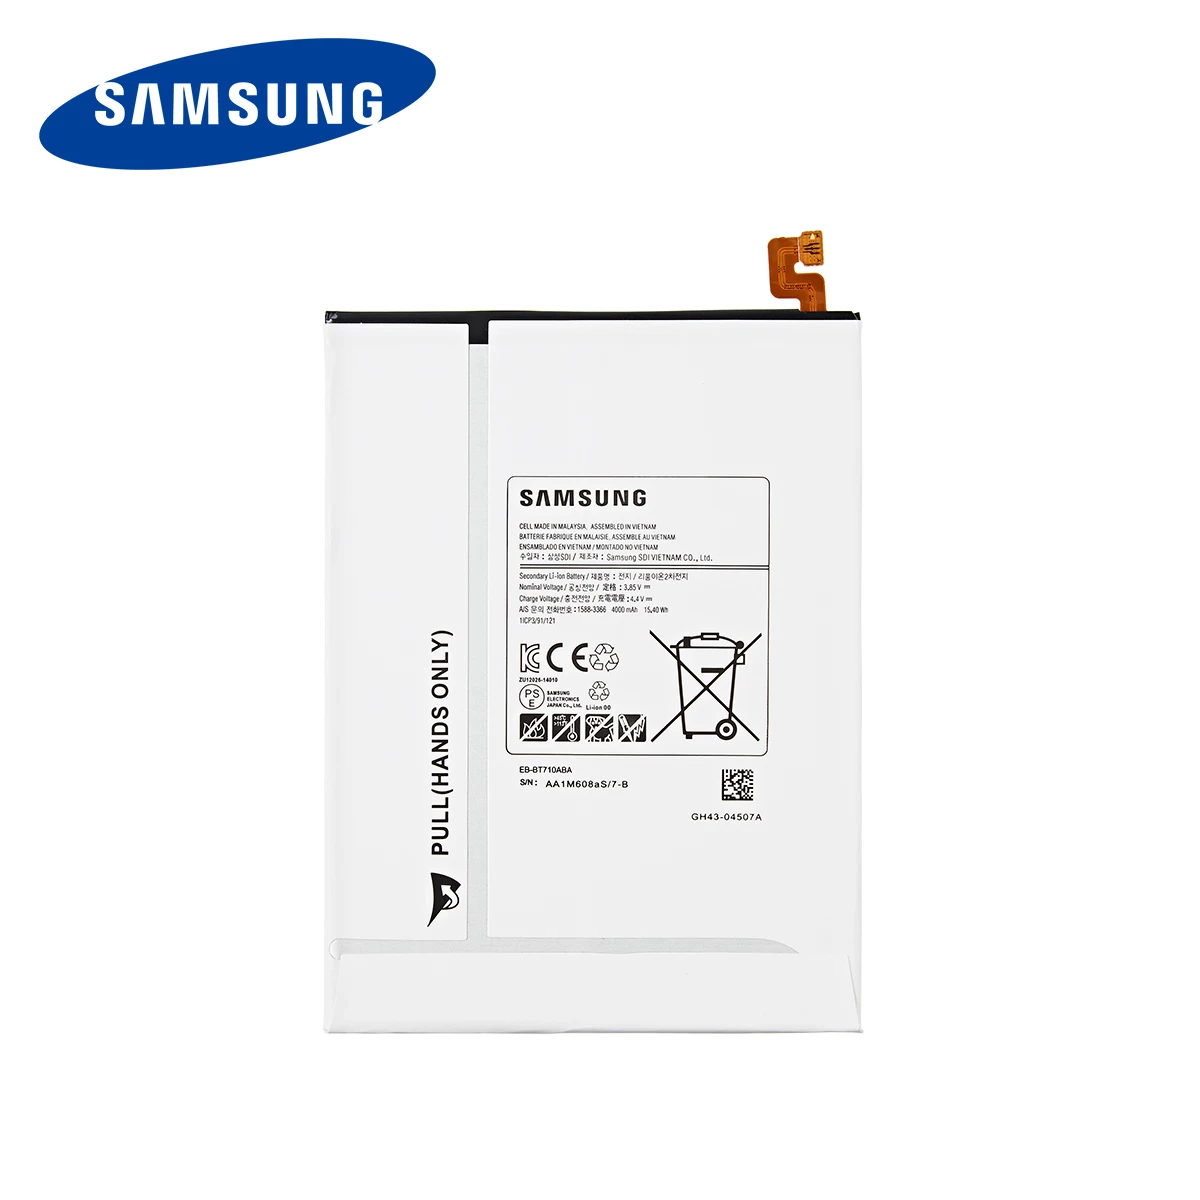 Originalni SAMSUNG Tablični EB-BT710ABA EB-BT710ABE 4000 mah baterija Za Samsung Tab Galaxy S2 8.0 SM-T710 T713 T715 T719C T713N+Orodja